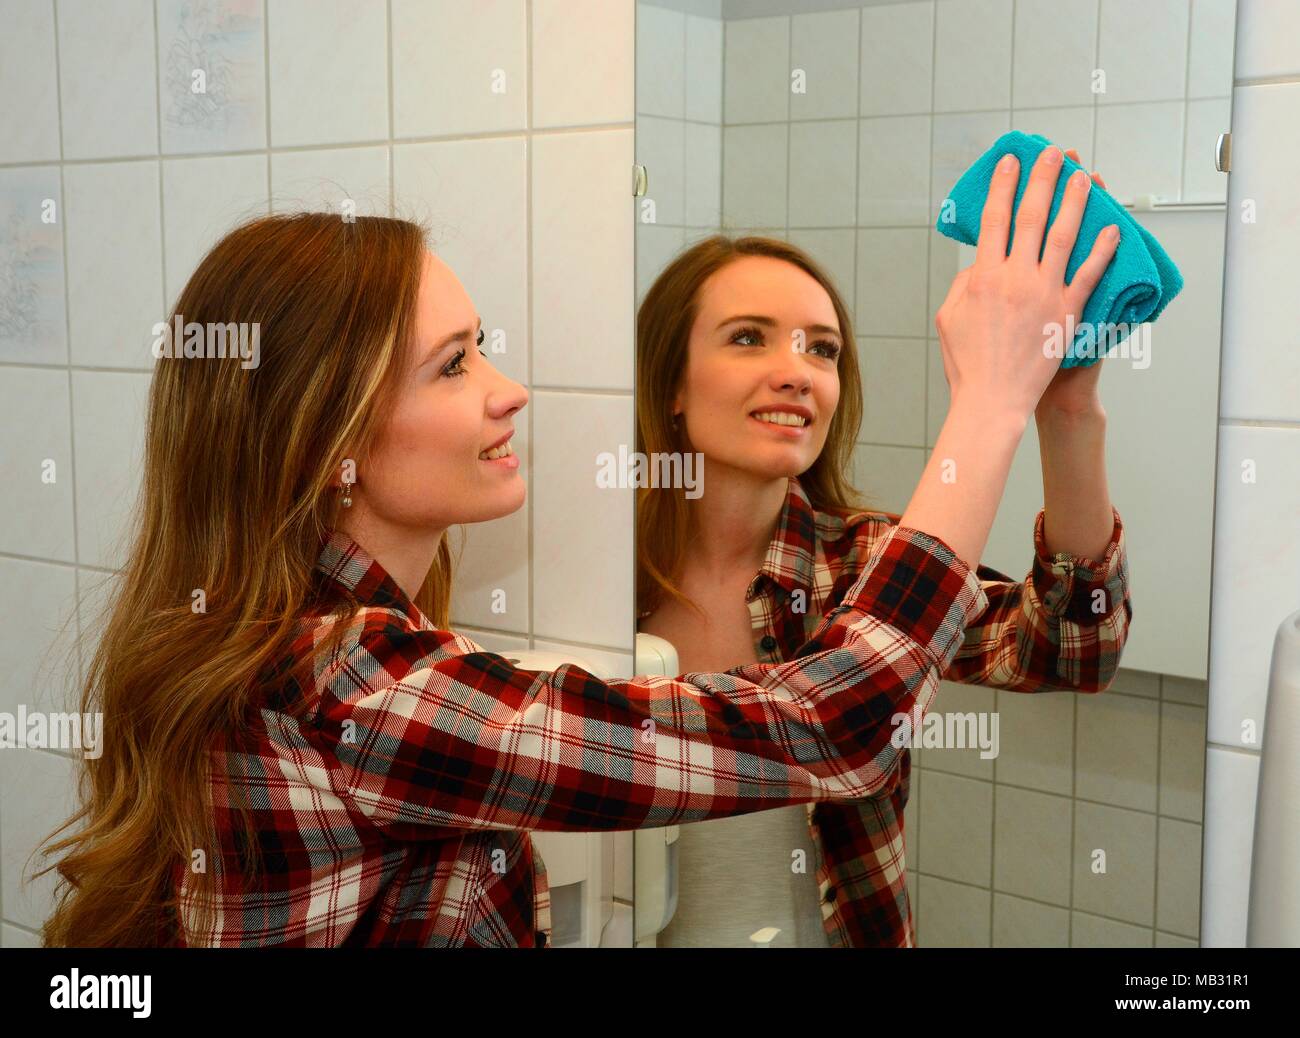 Travaux maison, young woman cleaning mirrir dans une salle de bains, Suède Banque D'Images